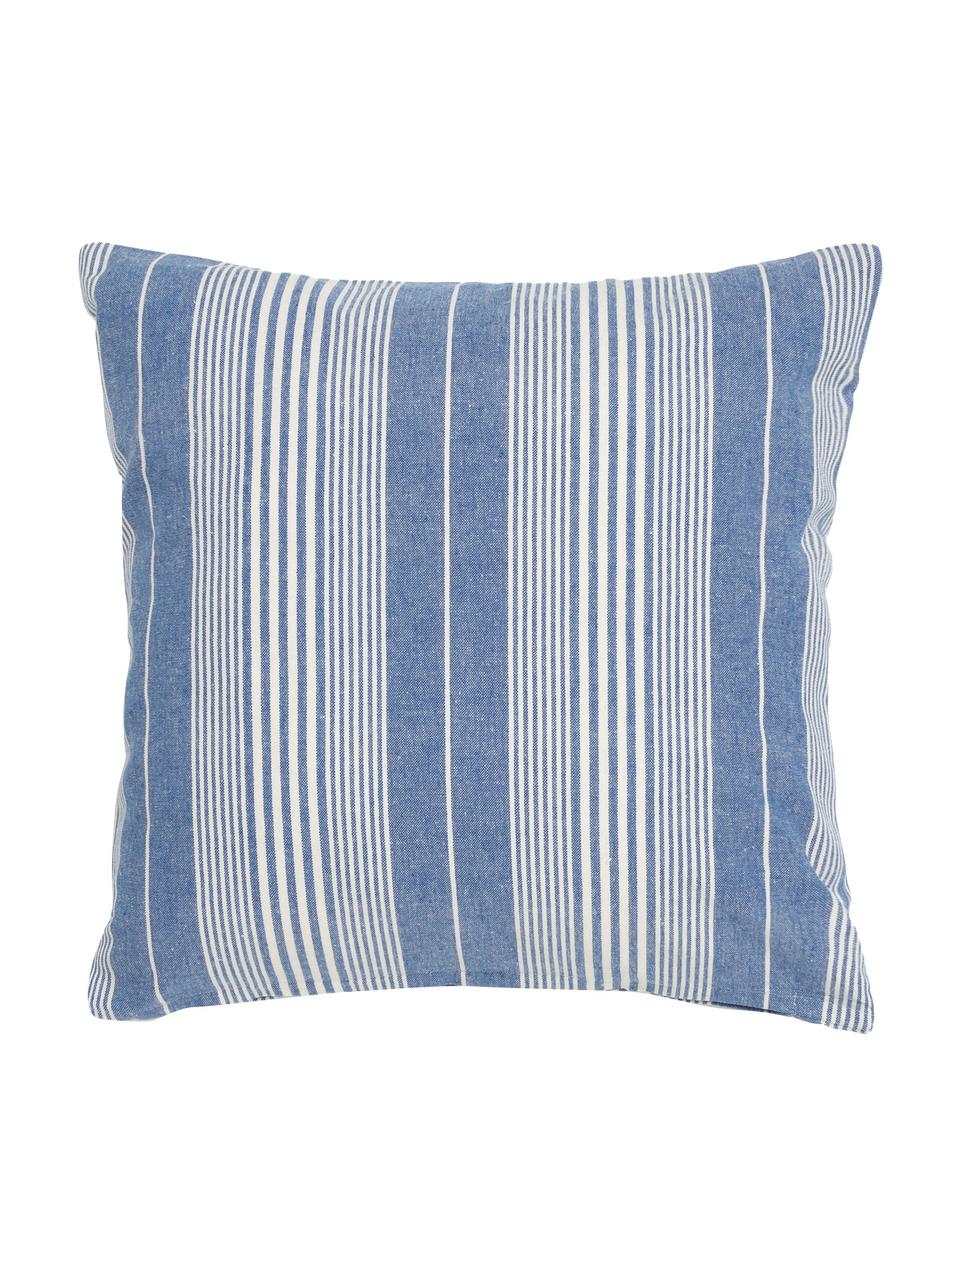 Poszewka na poduszkę z bawełny Tosa, 100% bawełna, Niebieski, biały, S 45 x D 45 cm